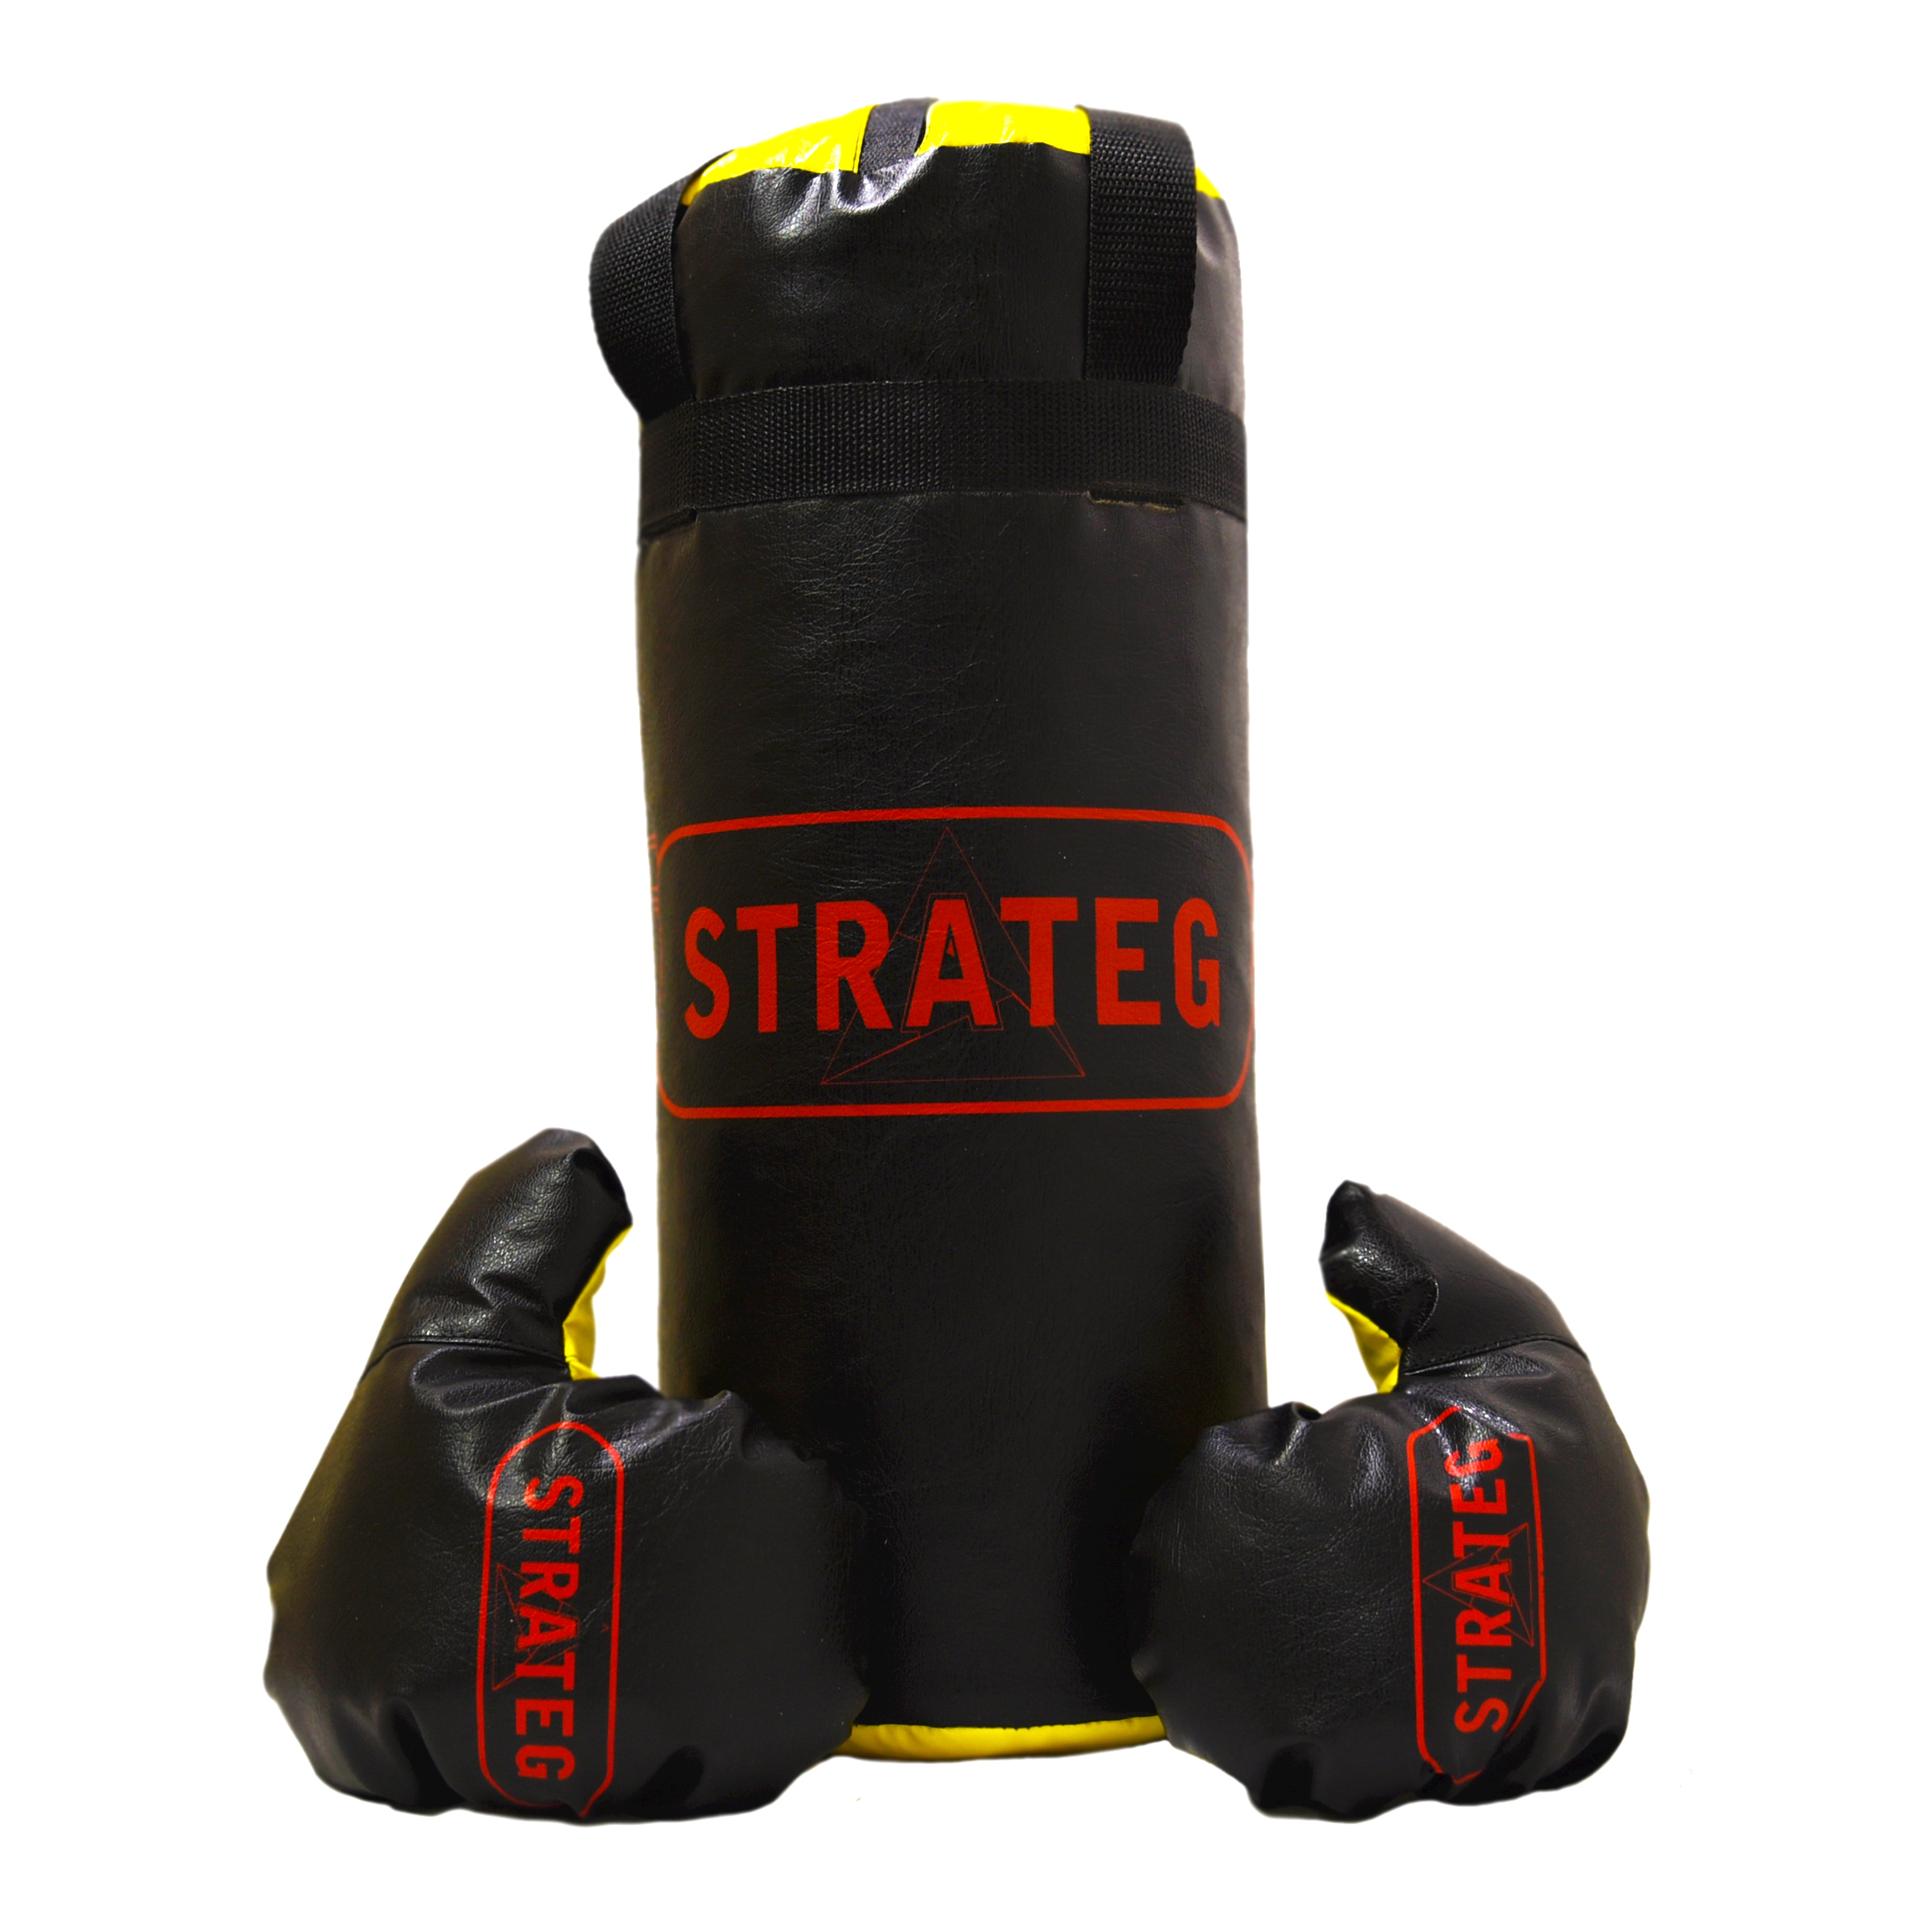 Боксерский набор Strateg Elite sport маленький высота 46 см диаметр 18 см(2020)